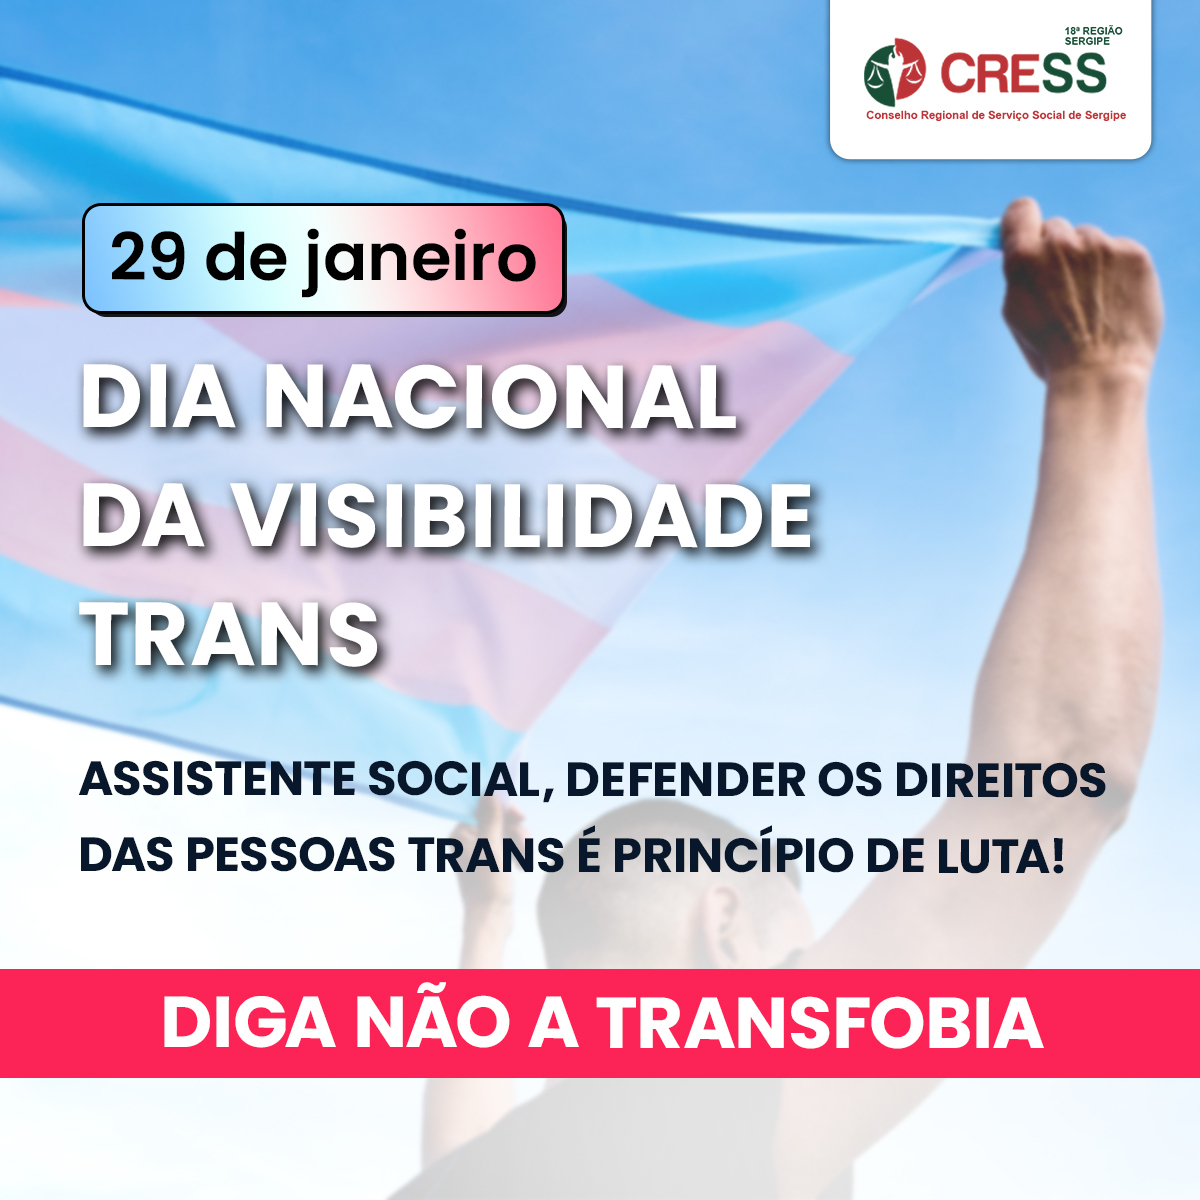 Dia Nacional da Visibilidade Trans: CRESS-SE reafirma compromisso do Serviço Social pelo enfrentamento da transfobia